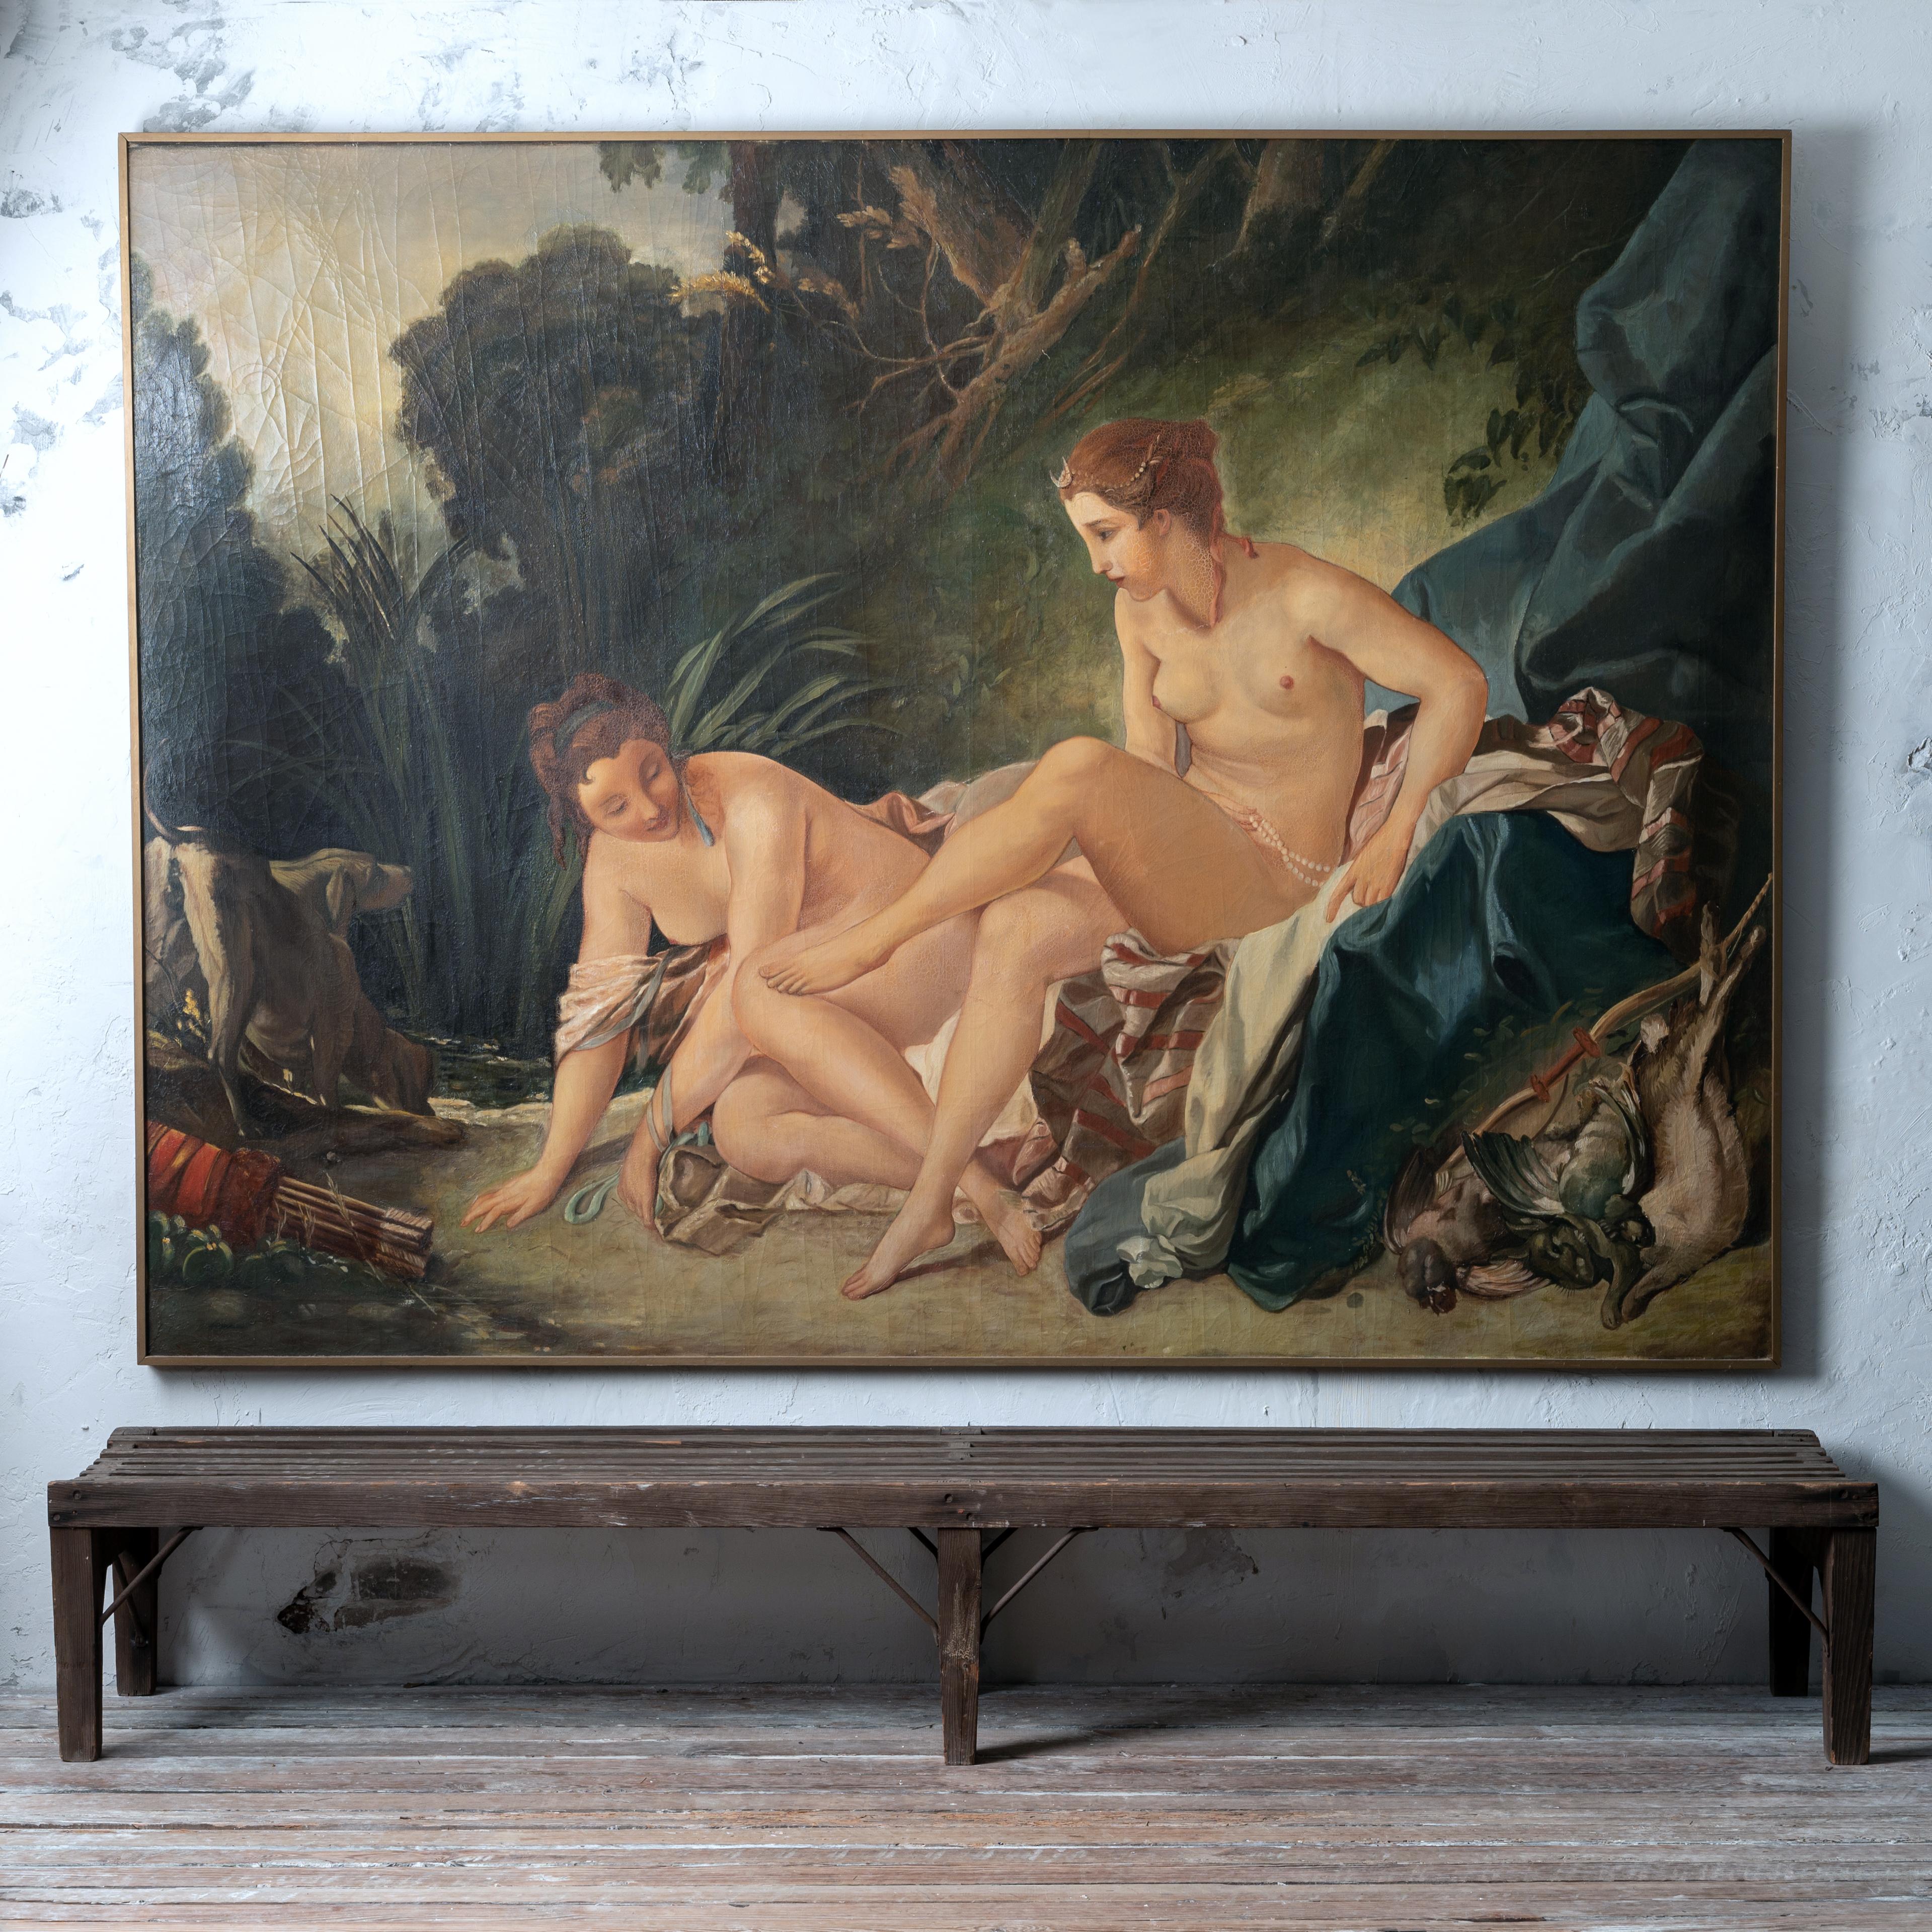 Une grande huile sur toile d'après François Boucher d'une œuvre de 1742 conservée au Louvre, Diane sortant du bain.  France, fin du XIXe siècle.

93 par 69 ¼ pouces ; 1 ½ pouces de profondeur

